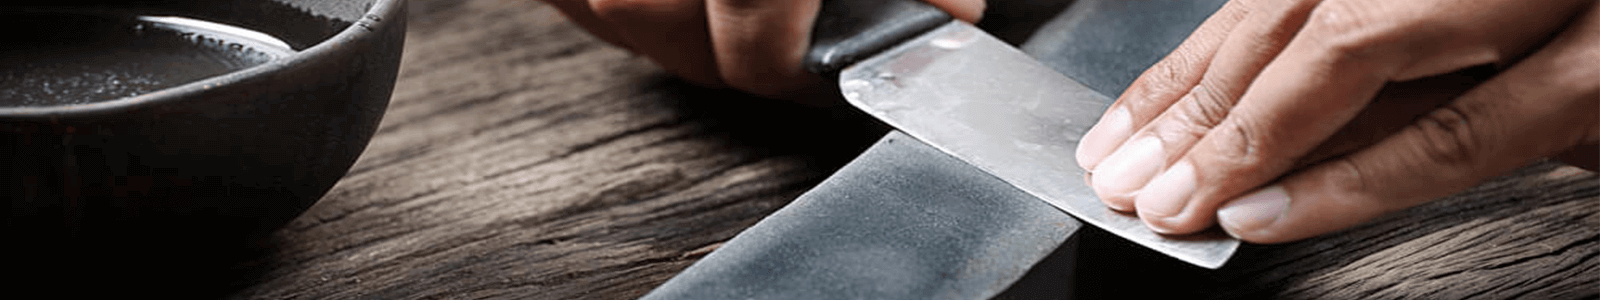 Outil à aiguiser les couteaux croches - papier de verre et cuir